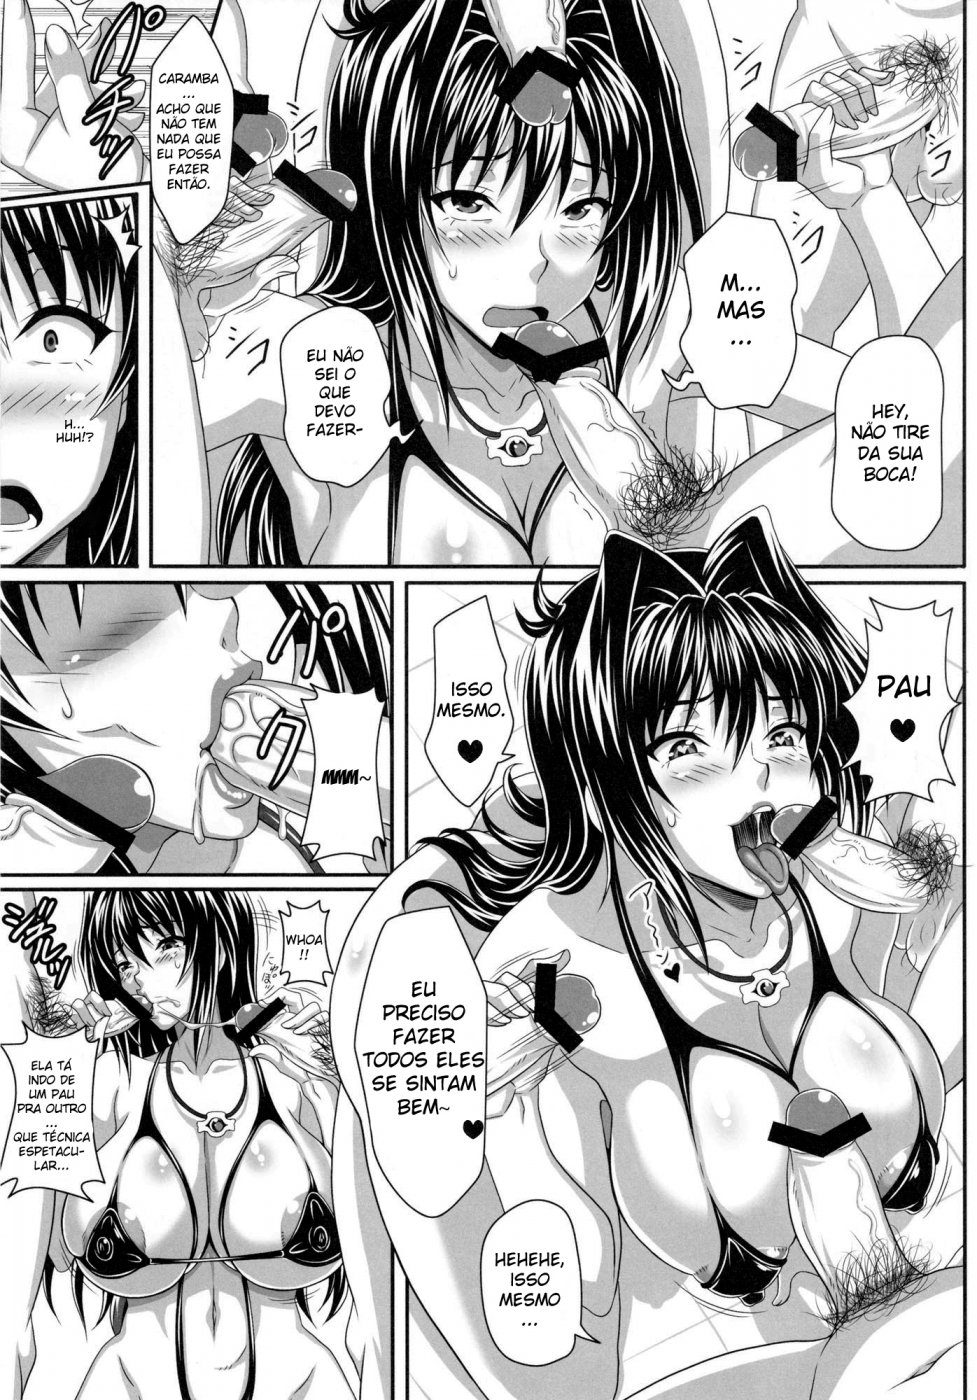 Sexo Hentai - Uma professora apaixonada por rola!